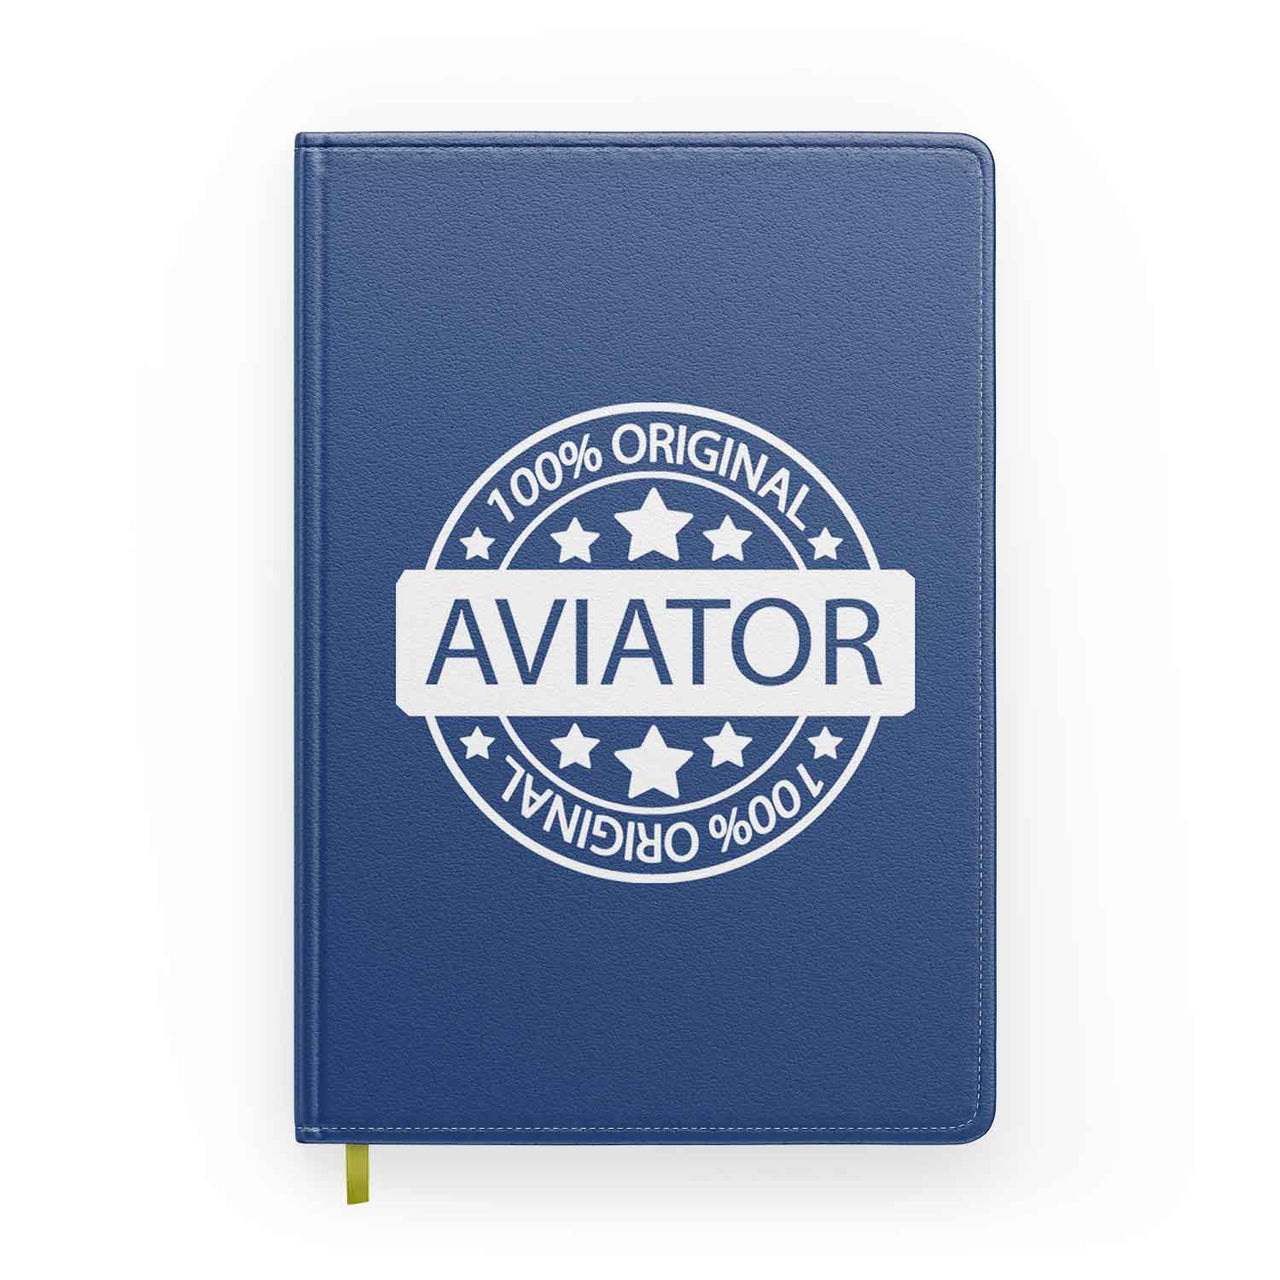 %100 Original Aviator Designed Notebooks